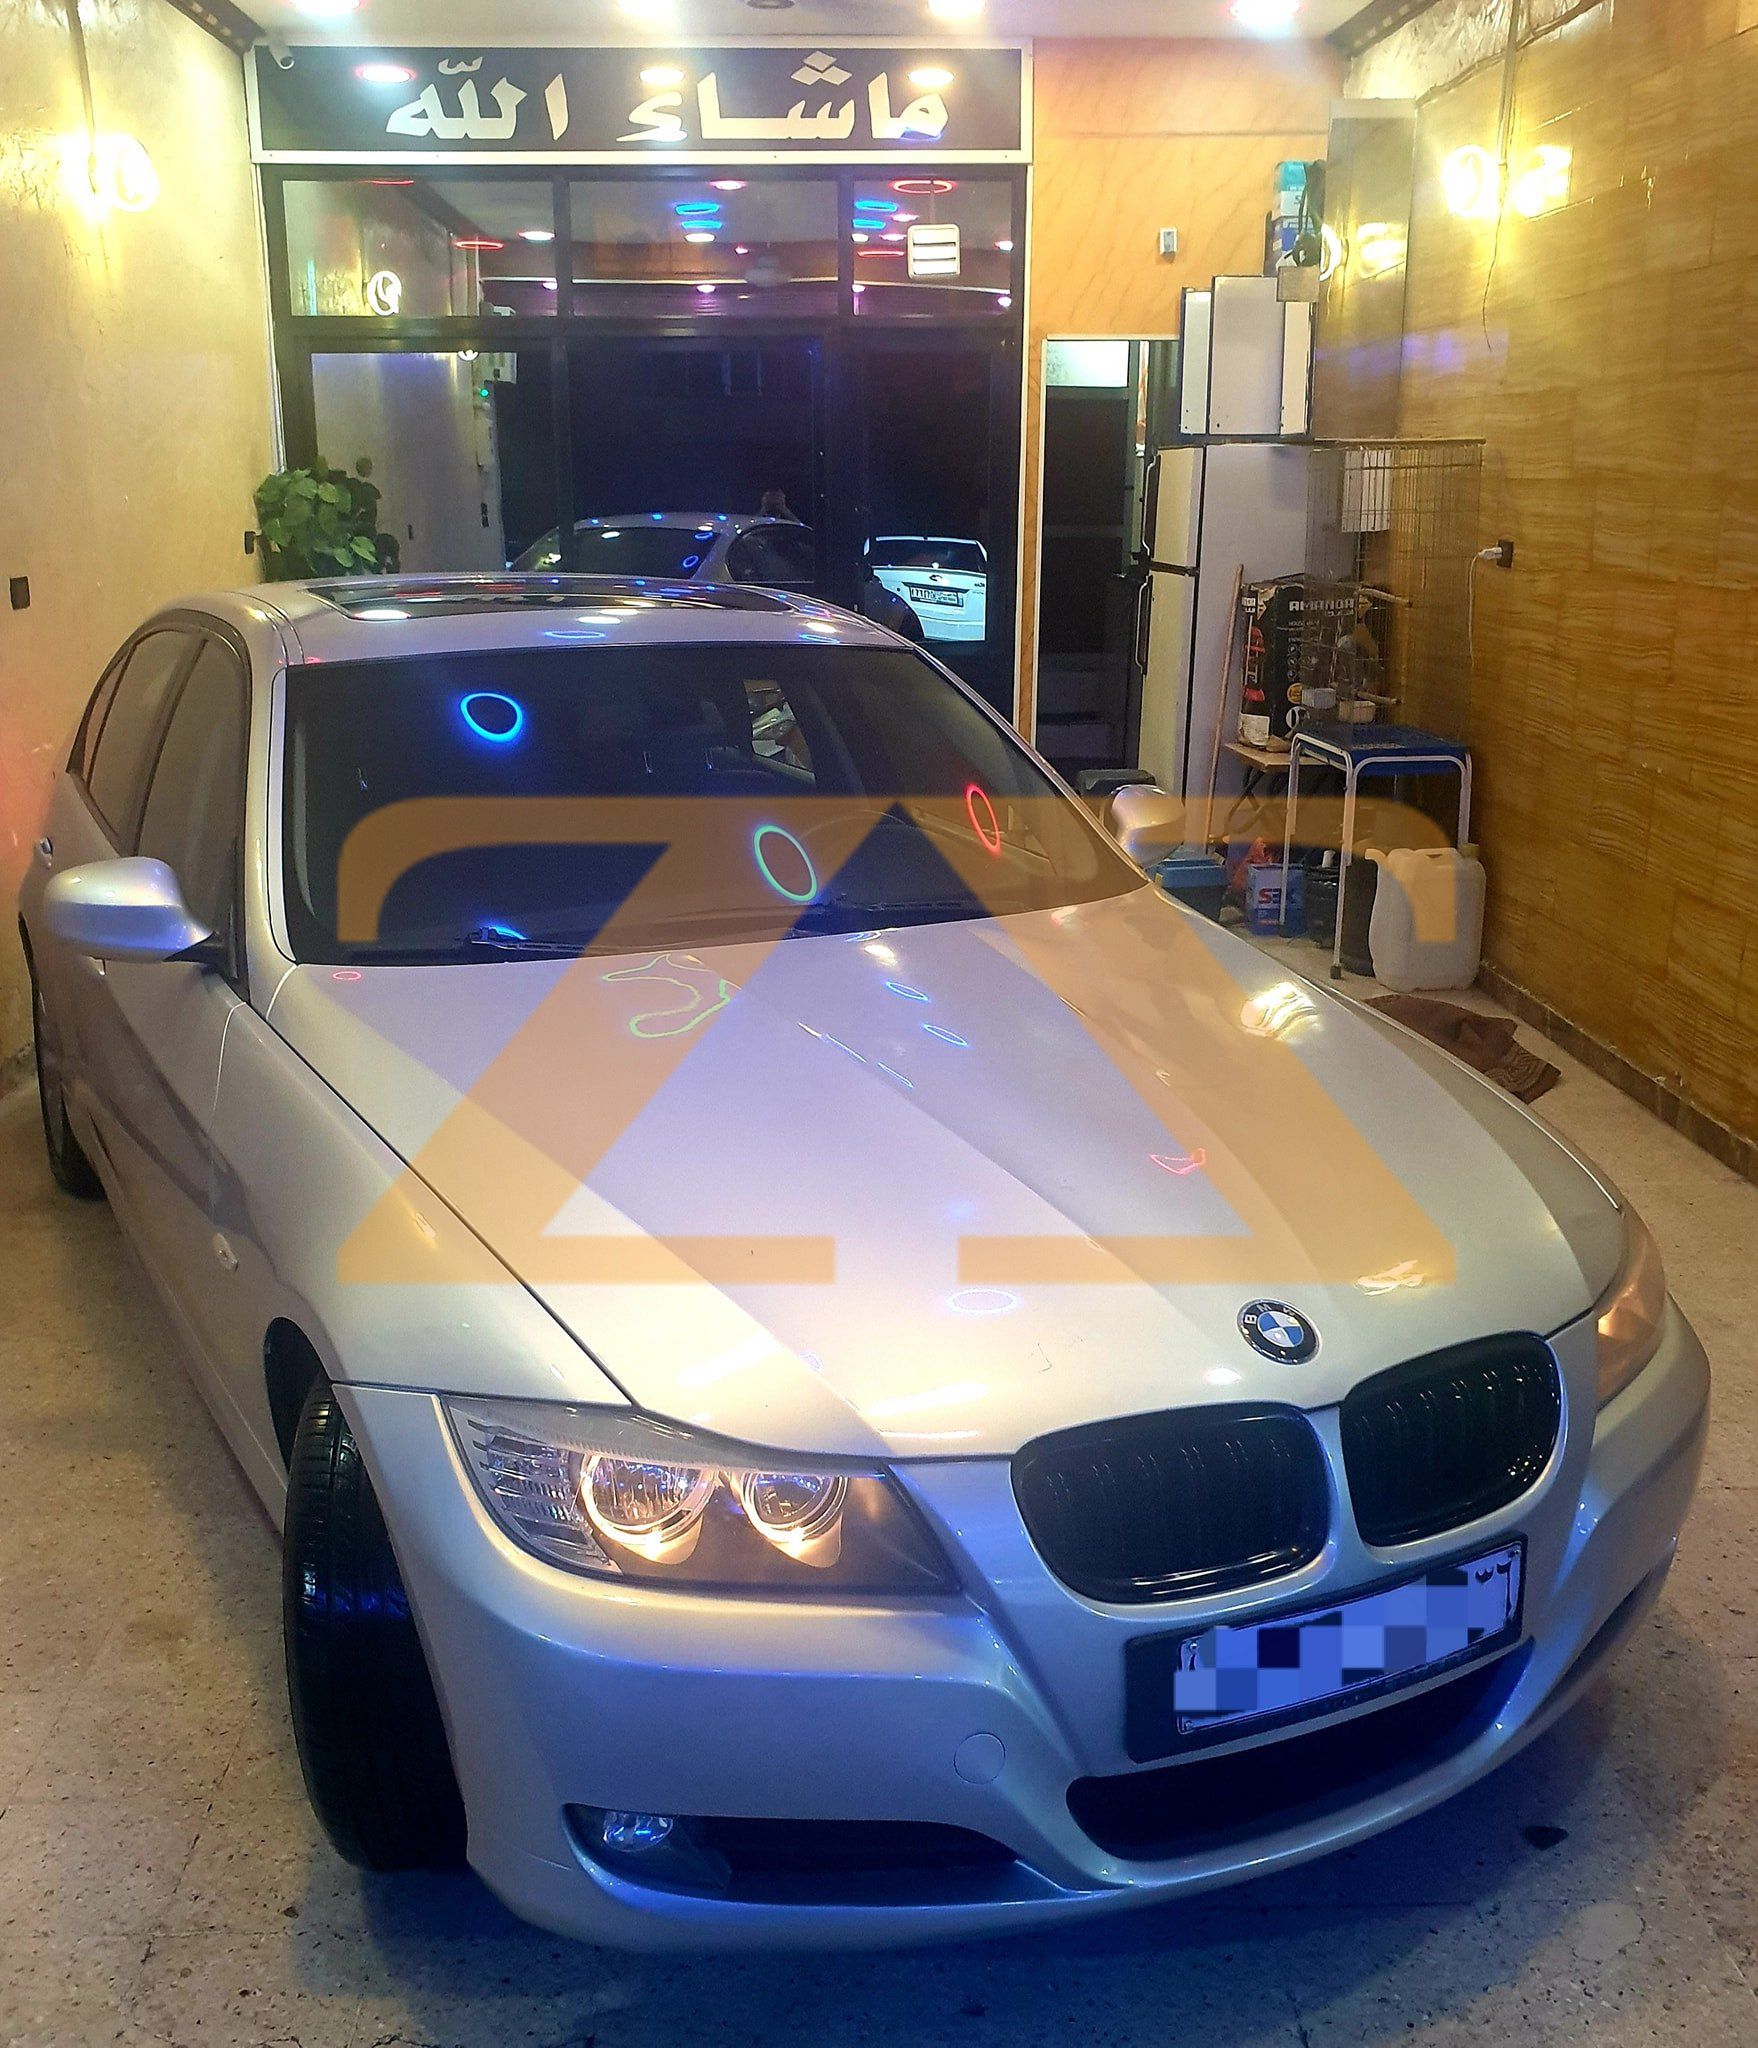 للبيع في دمشق سيارة BMW